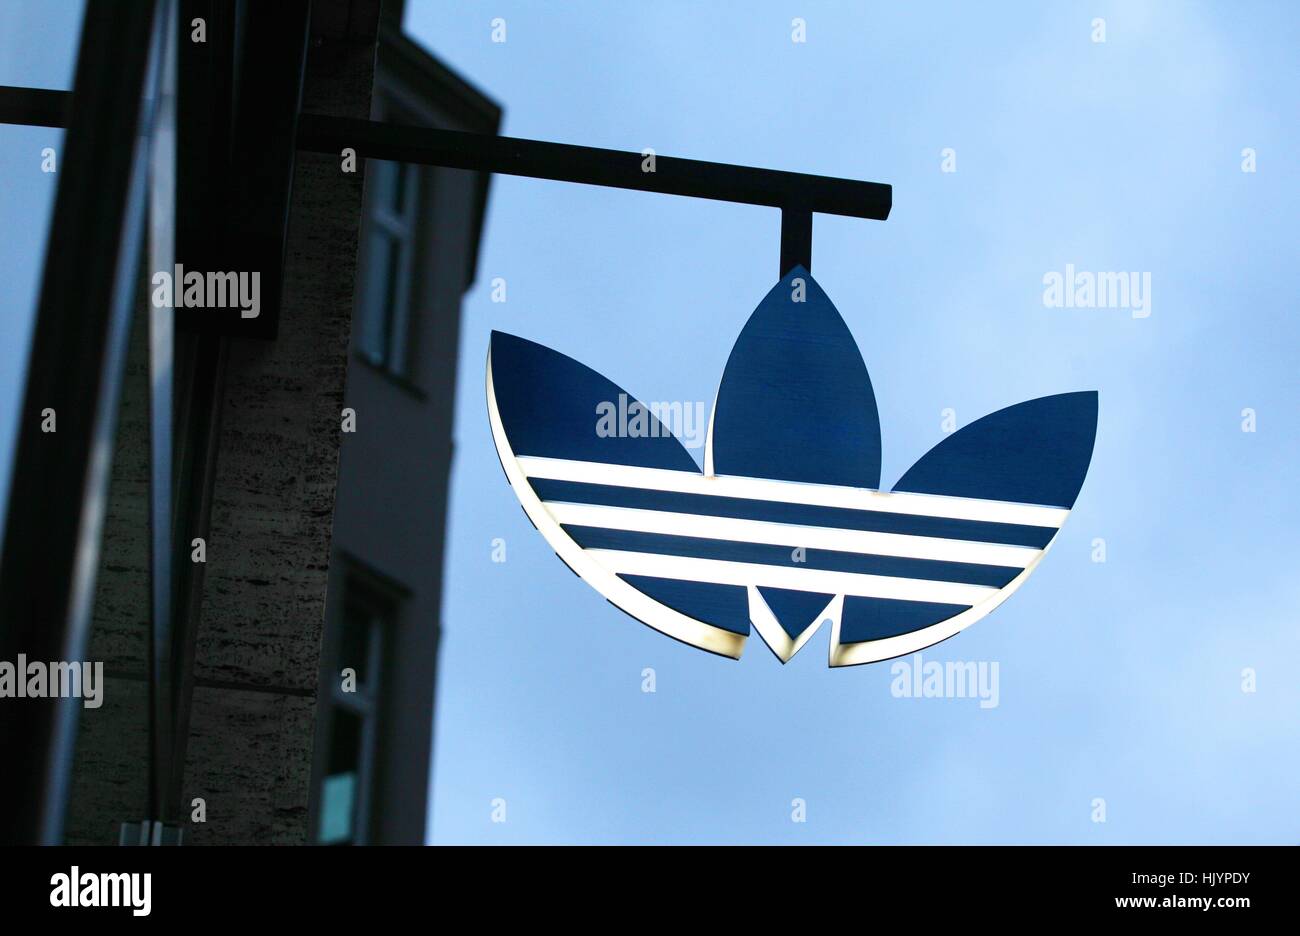 Inserat adidas -Fotos und -Bildmaterial in hoher Auflösung – Alamy